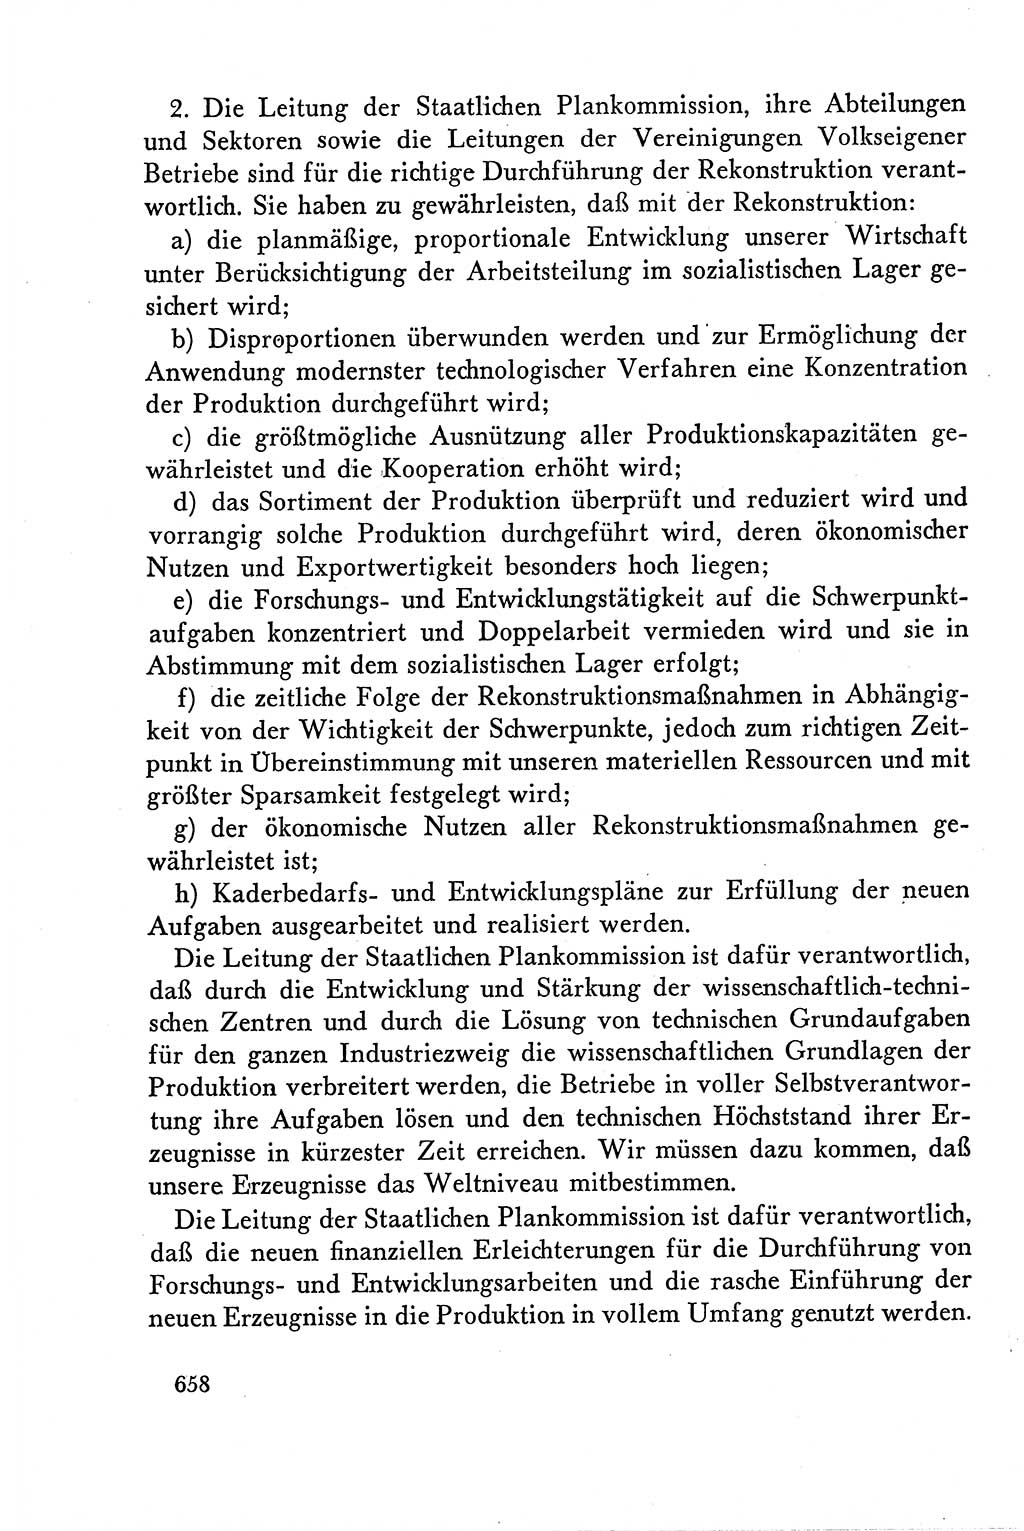 Dokumente der Sozialistischen Einheitspartei Deutschlands (SED) [Deutsche Demokratische Republik (DDR)] 1958-1959, Seite 658 (Dok. SED DDR 1958-1959, S. 658)